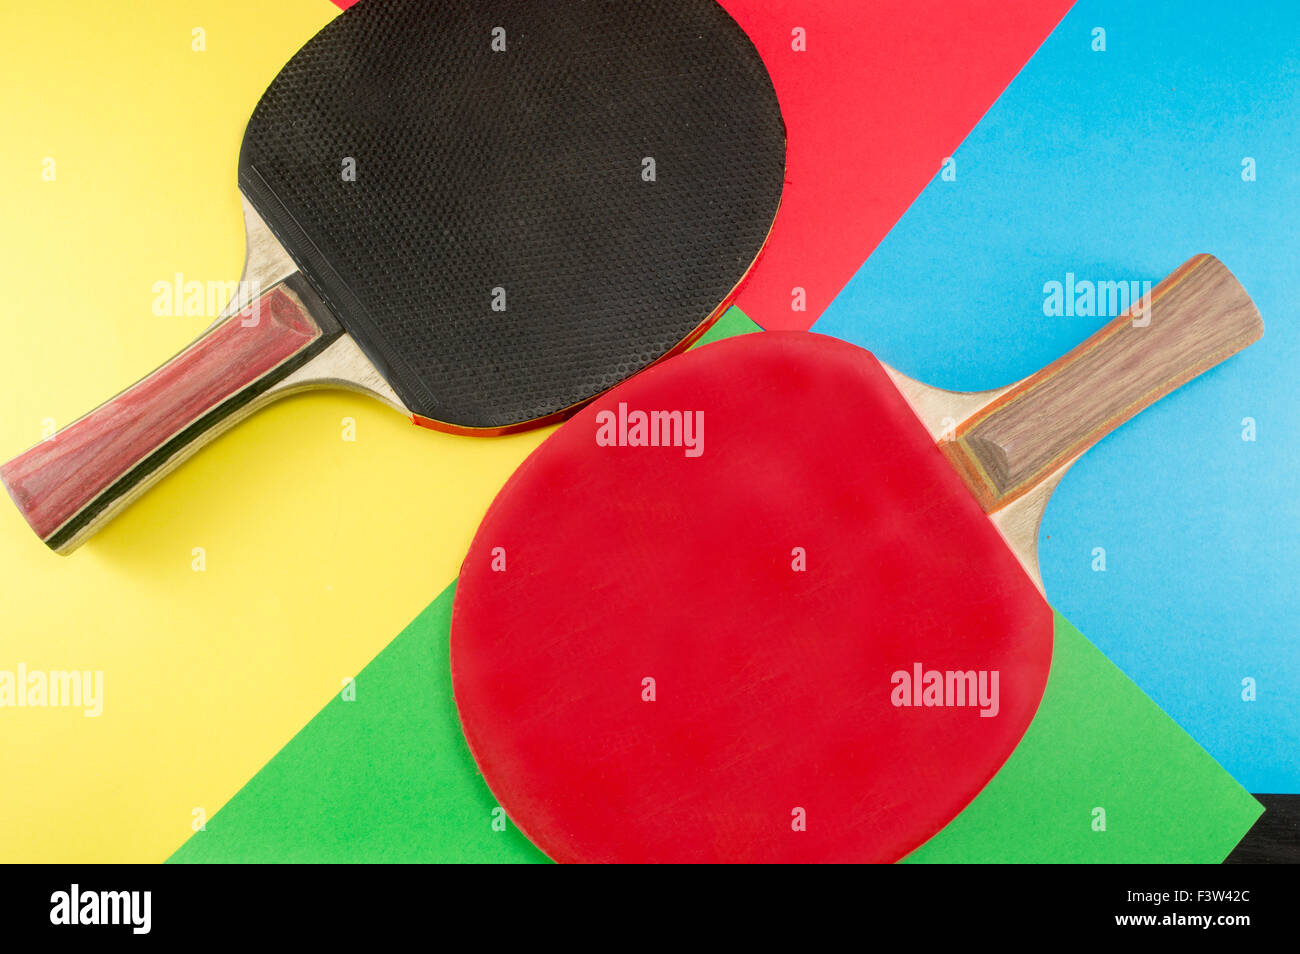 Par de palas de tenis de mesa en un colorido fondo collage Foto de stock